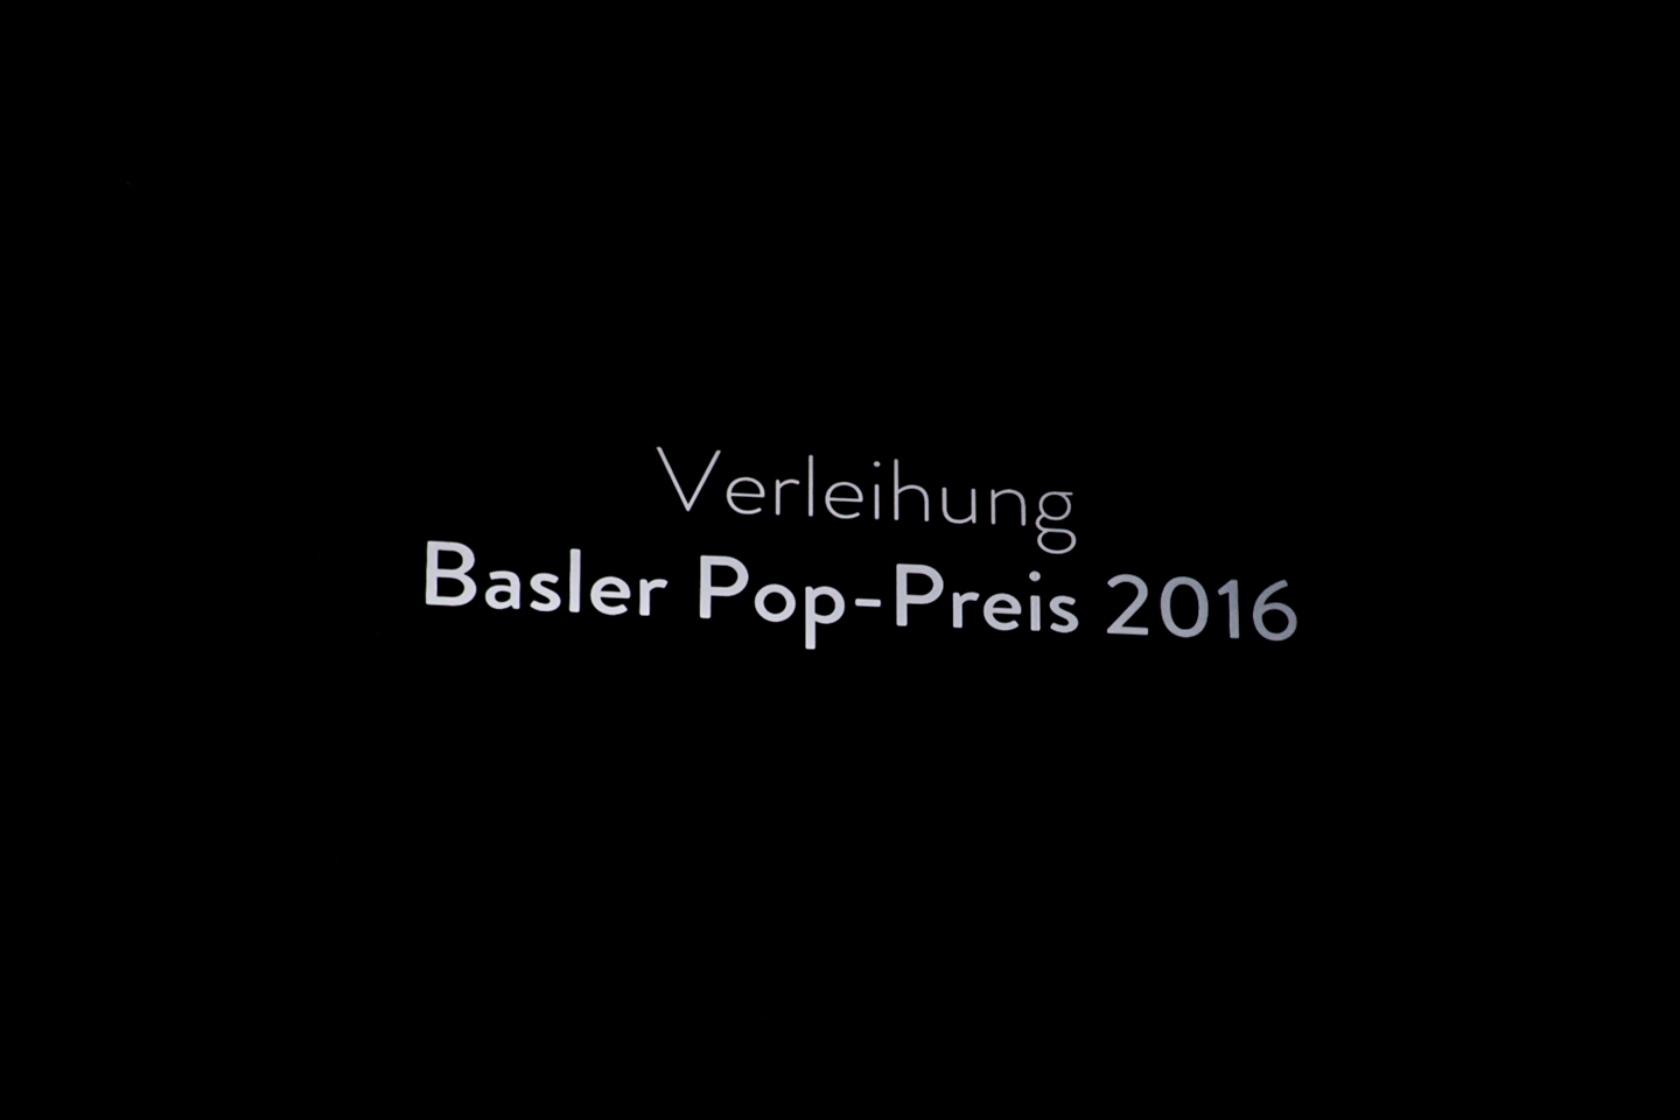 Verleihung Basler Pop-Preis © Gaspard Weissheimer 2016